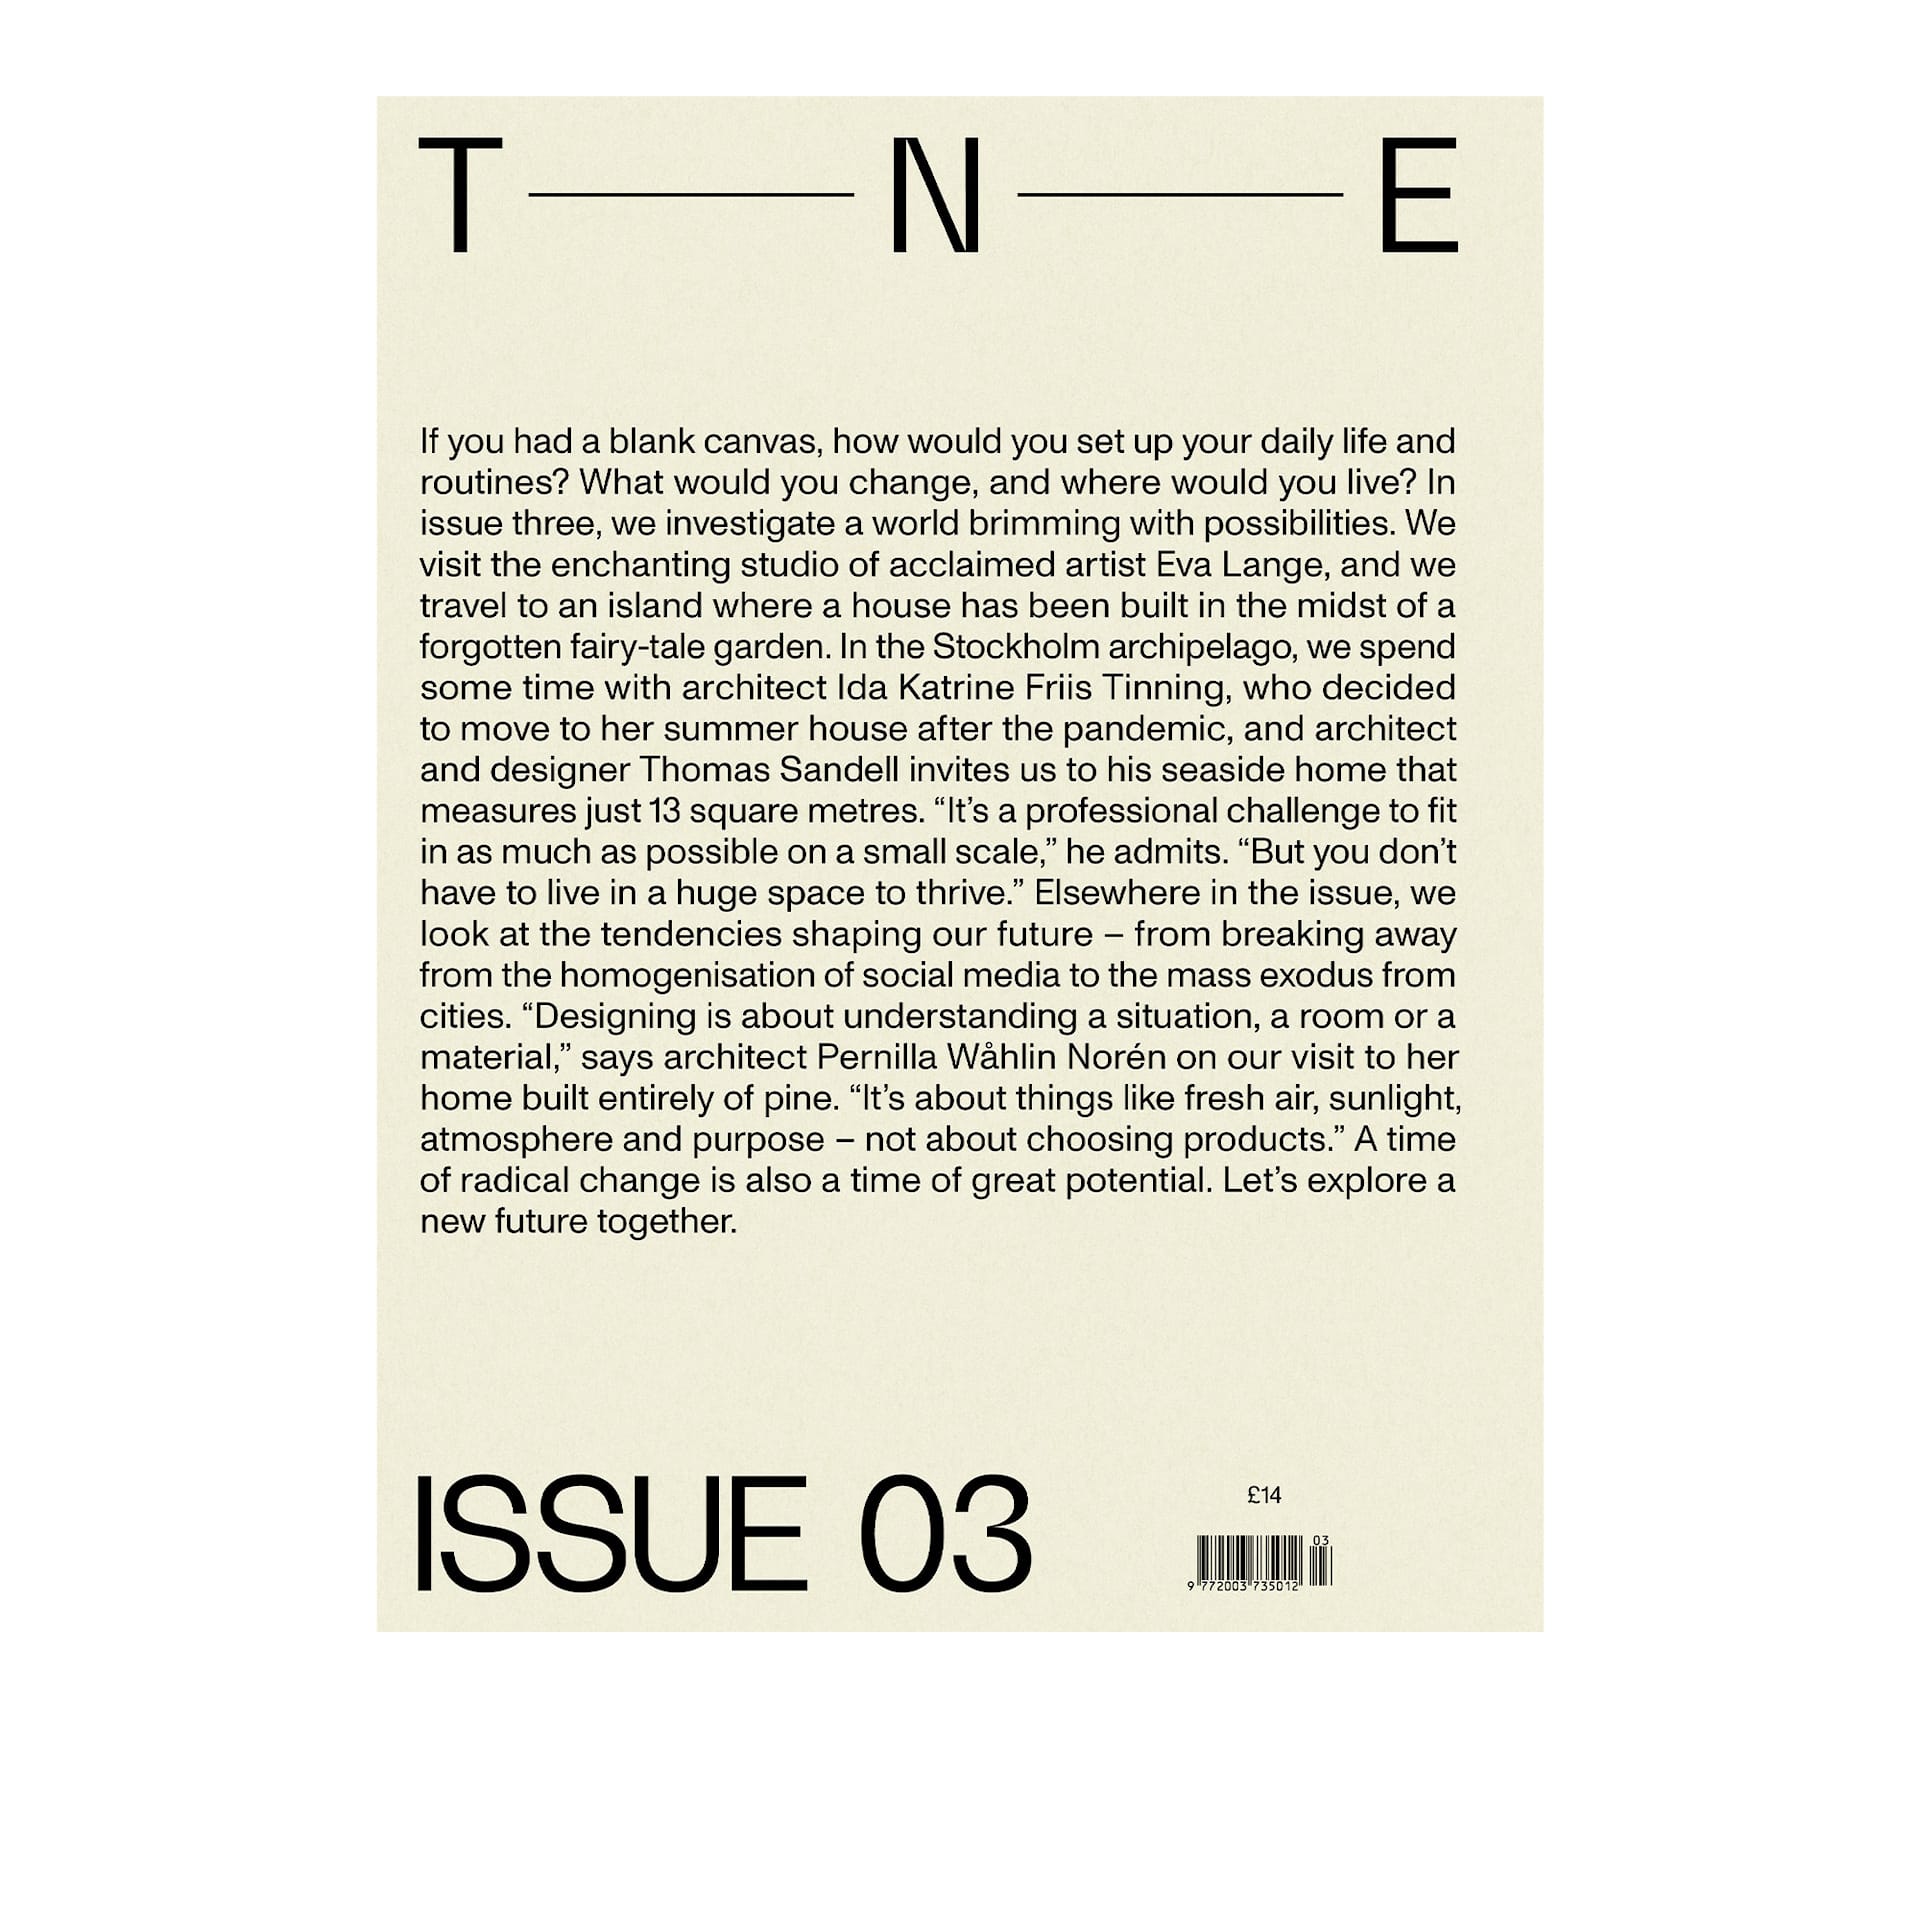 The New Era Magazine Issue 03 - The New Era - NO GA